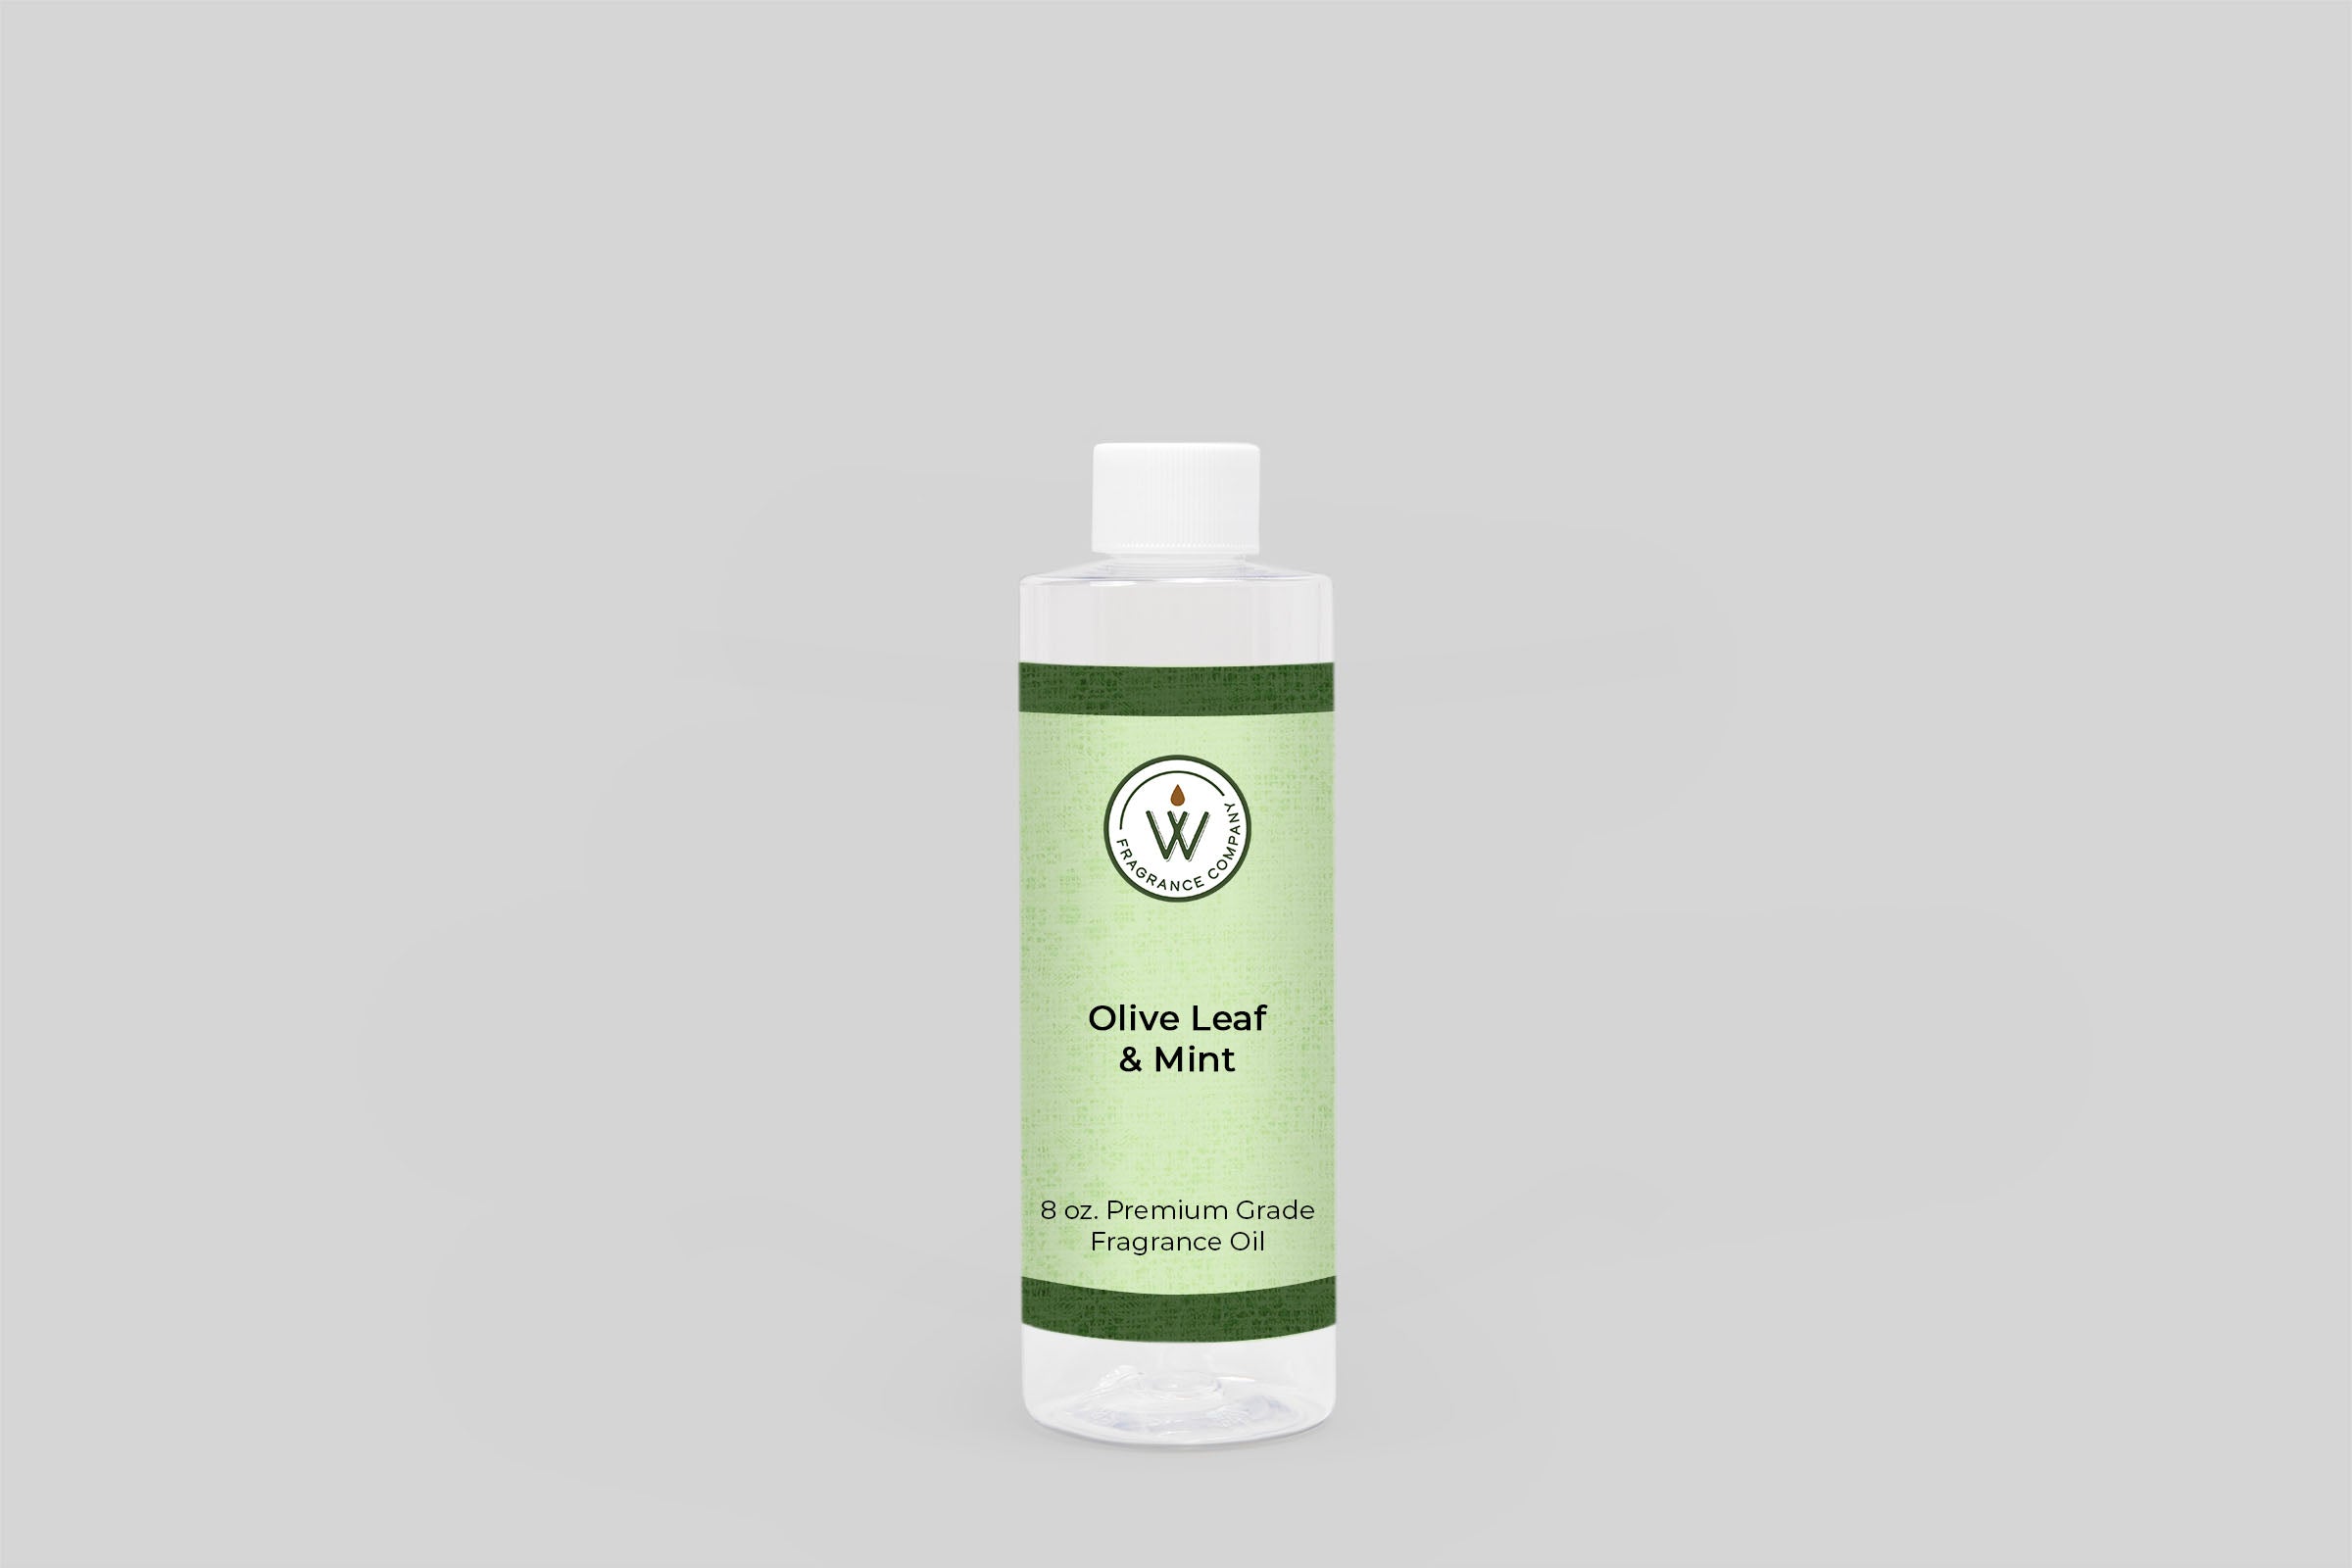 Olive Leaf & Mint Fragrance Oil